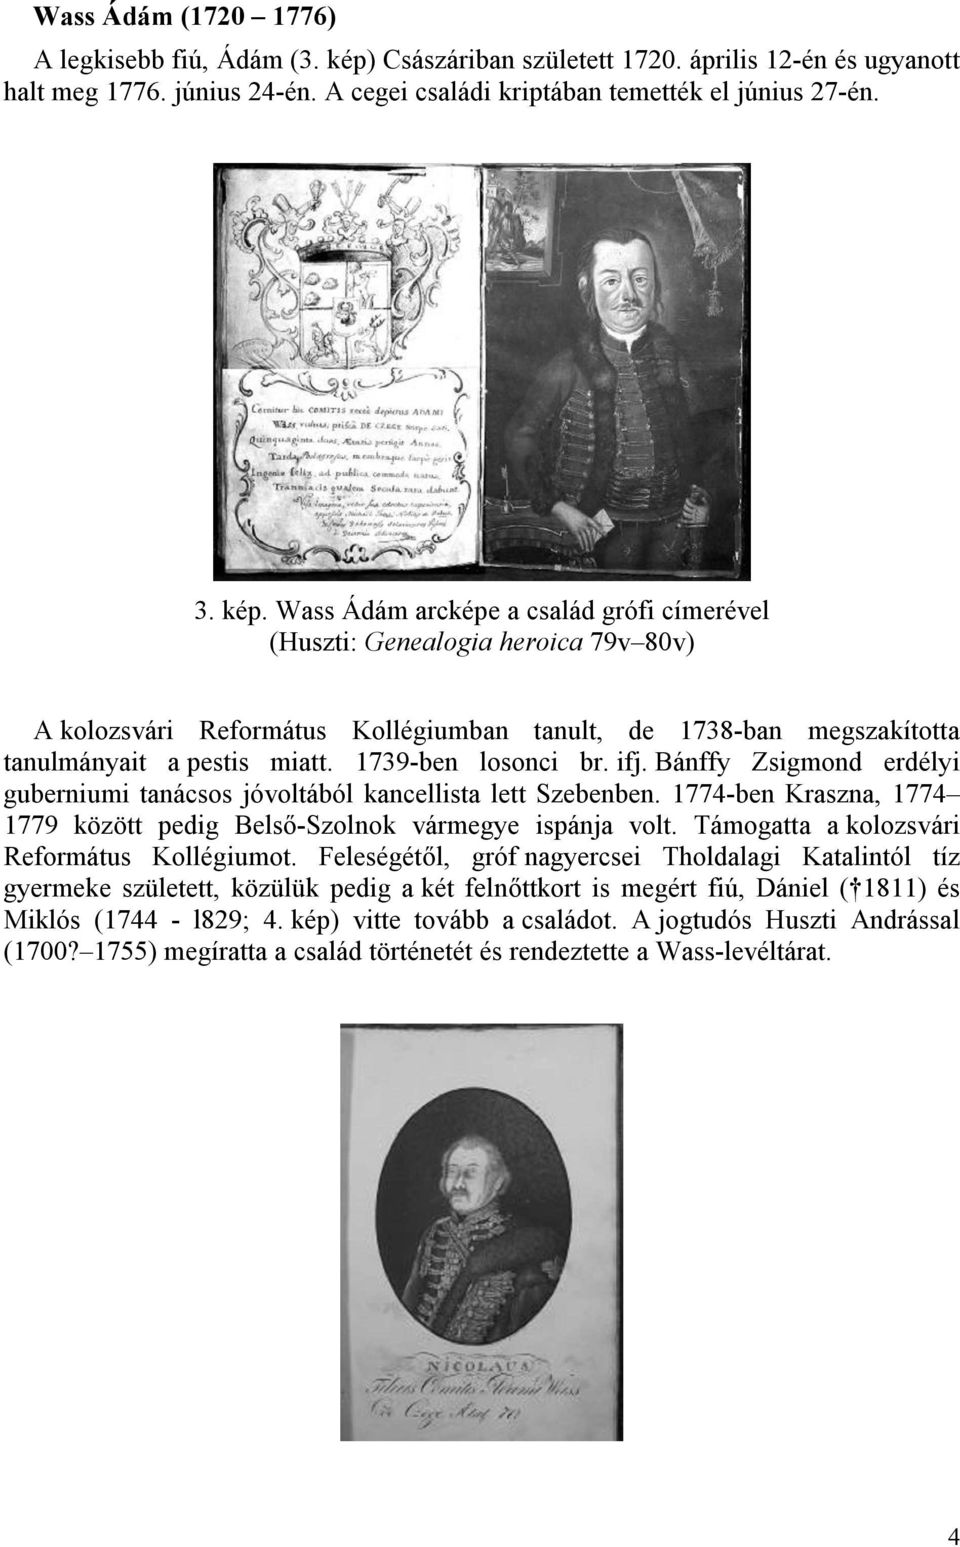 Wass Ádám arcképe a család grófi címerével (Huszti: Genealogia heroica 79v 80v) A kolozsvári Református Kollégiumban tanult, de 1738-ban megszakította tanulmányait a pestis miatt. 1739-ben losonci br.